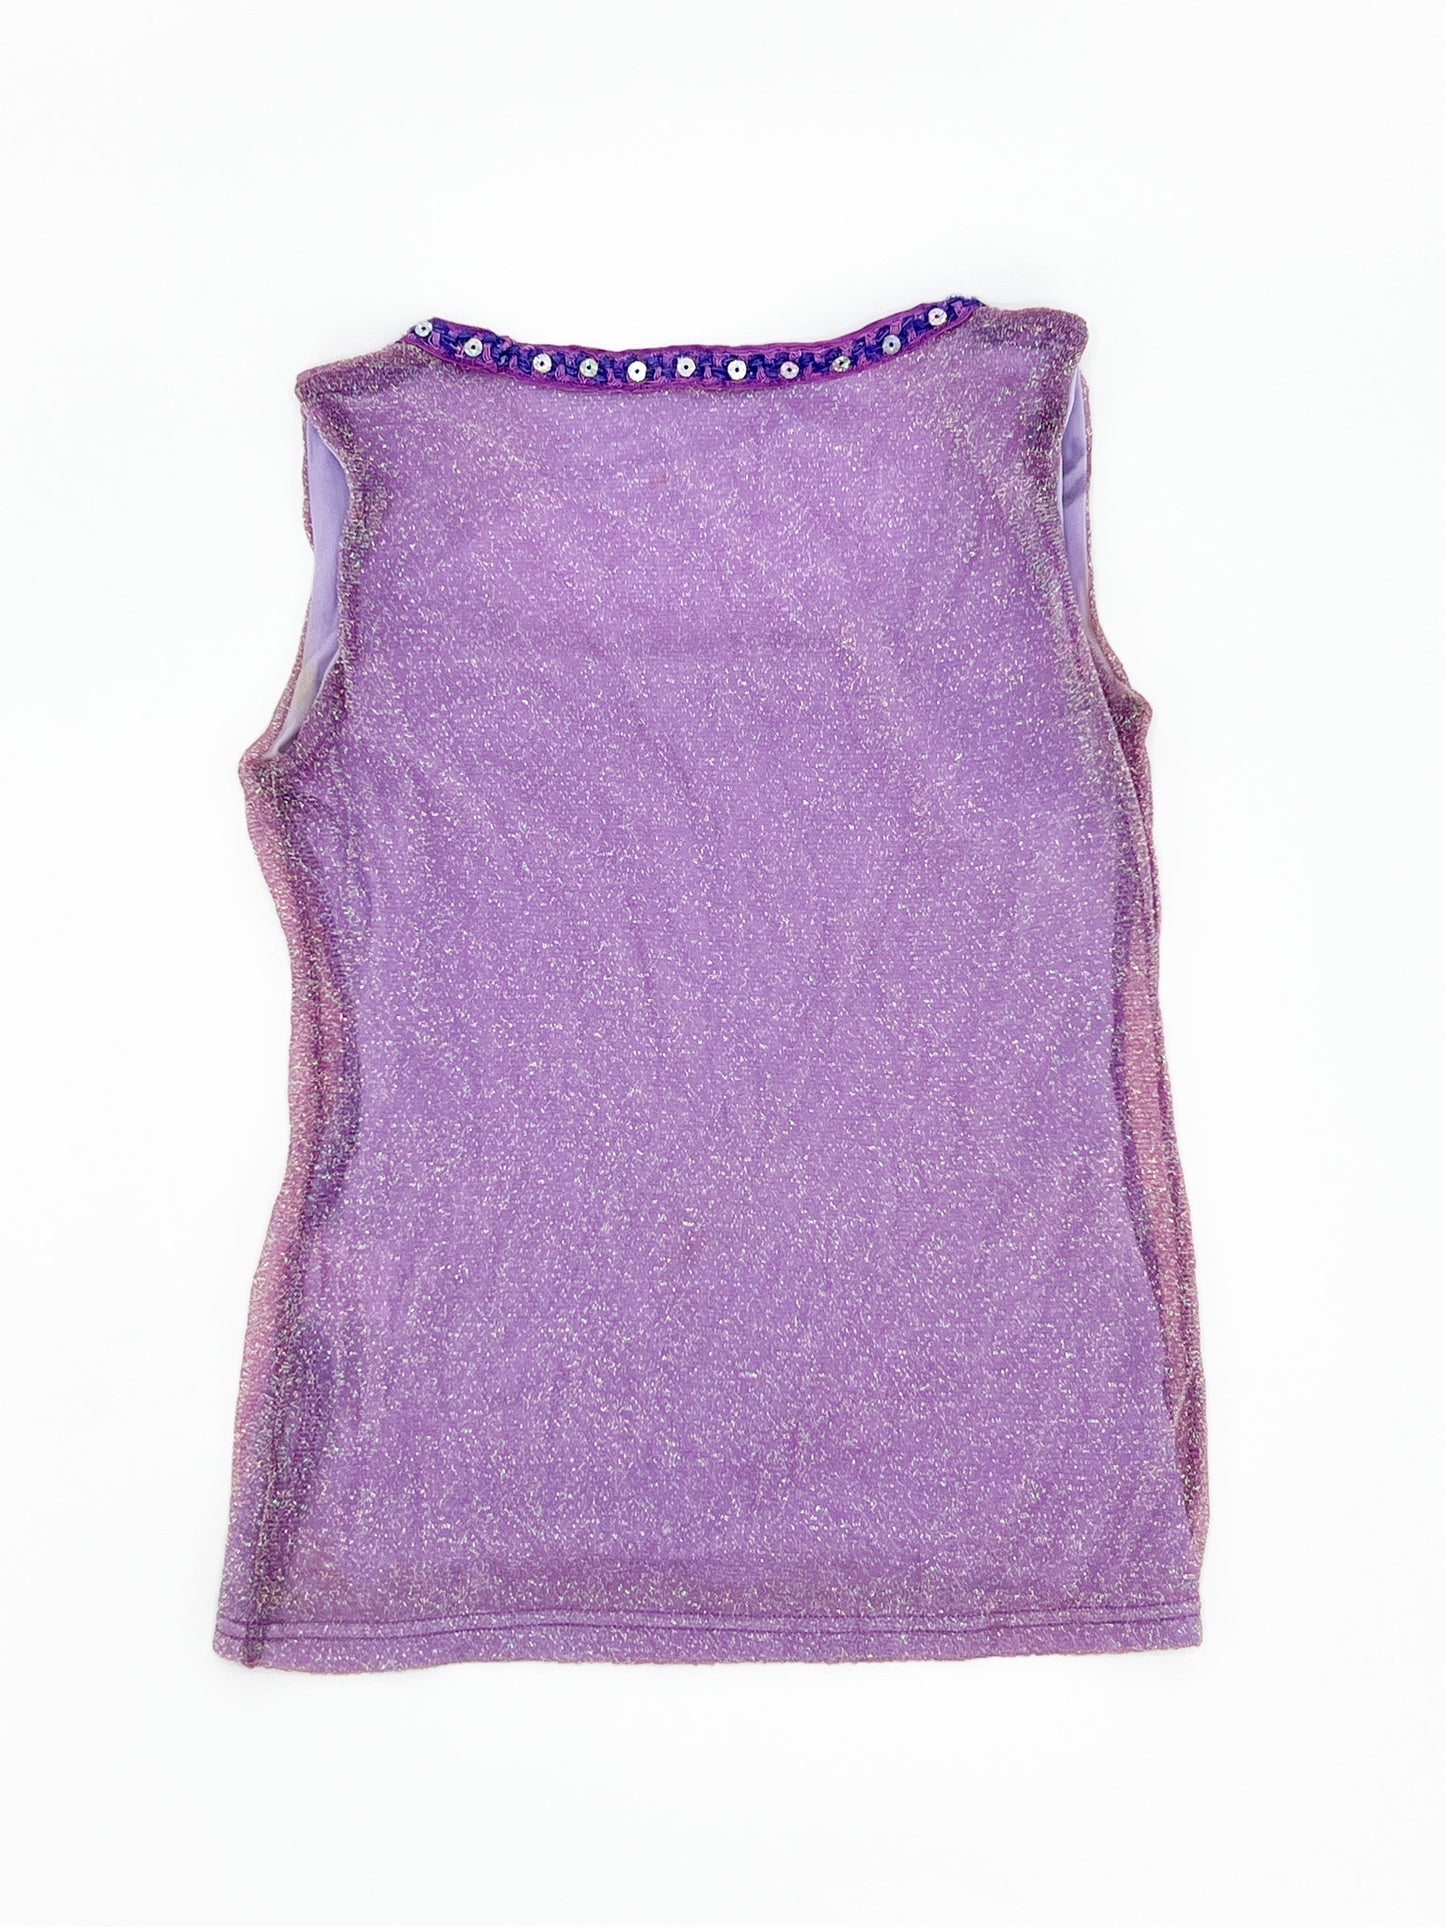 Vintage 00's Purple Shimmer Top S